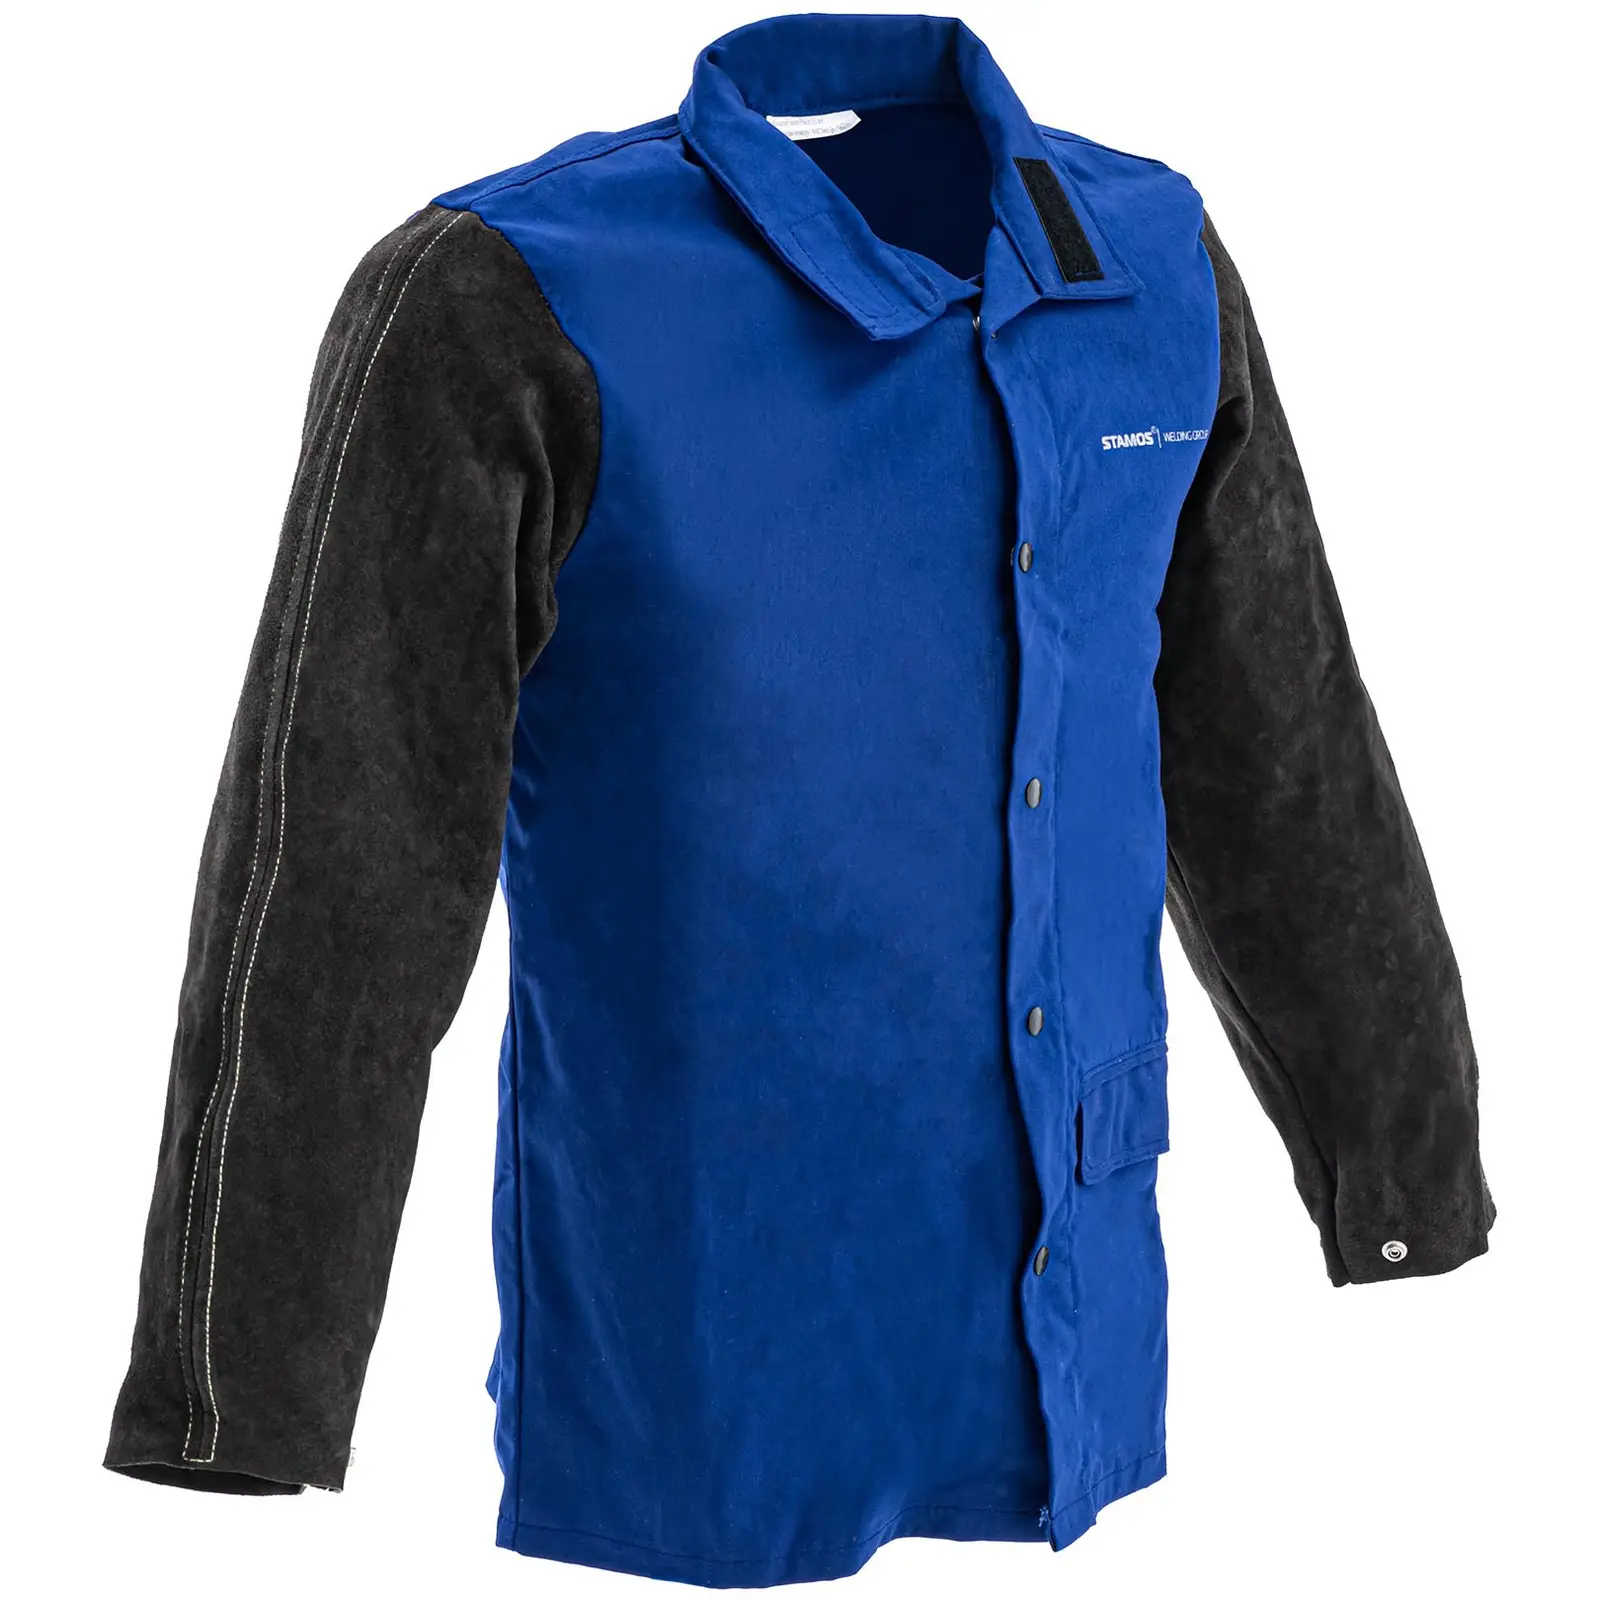 Svářečská bunda z bavlněného saténu / hovězí štípenky - velikost XL - černá / modrá